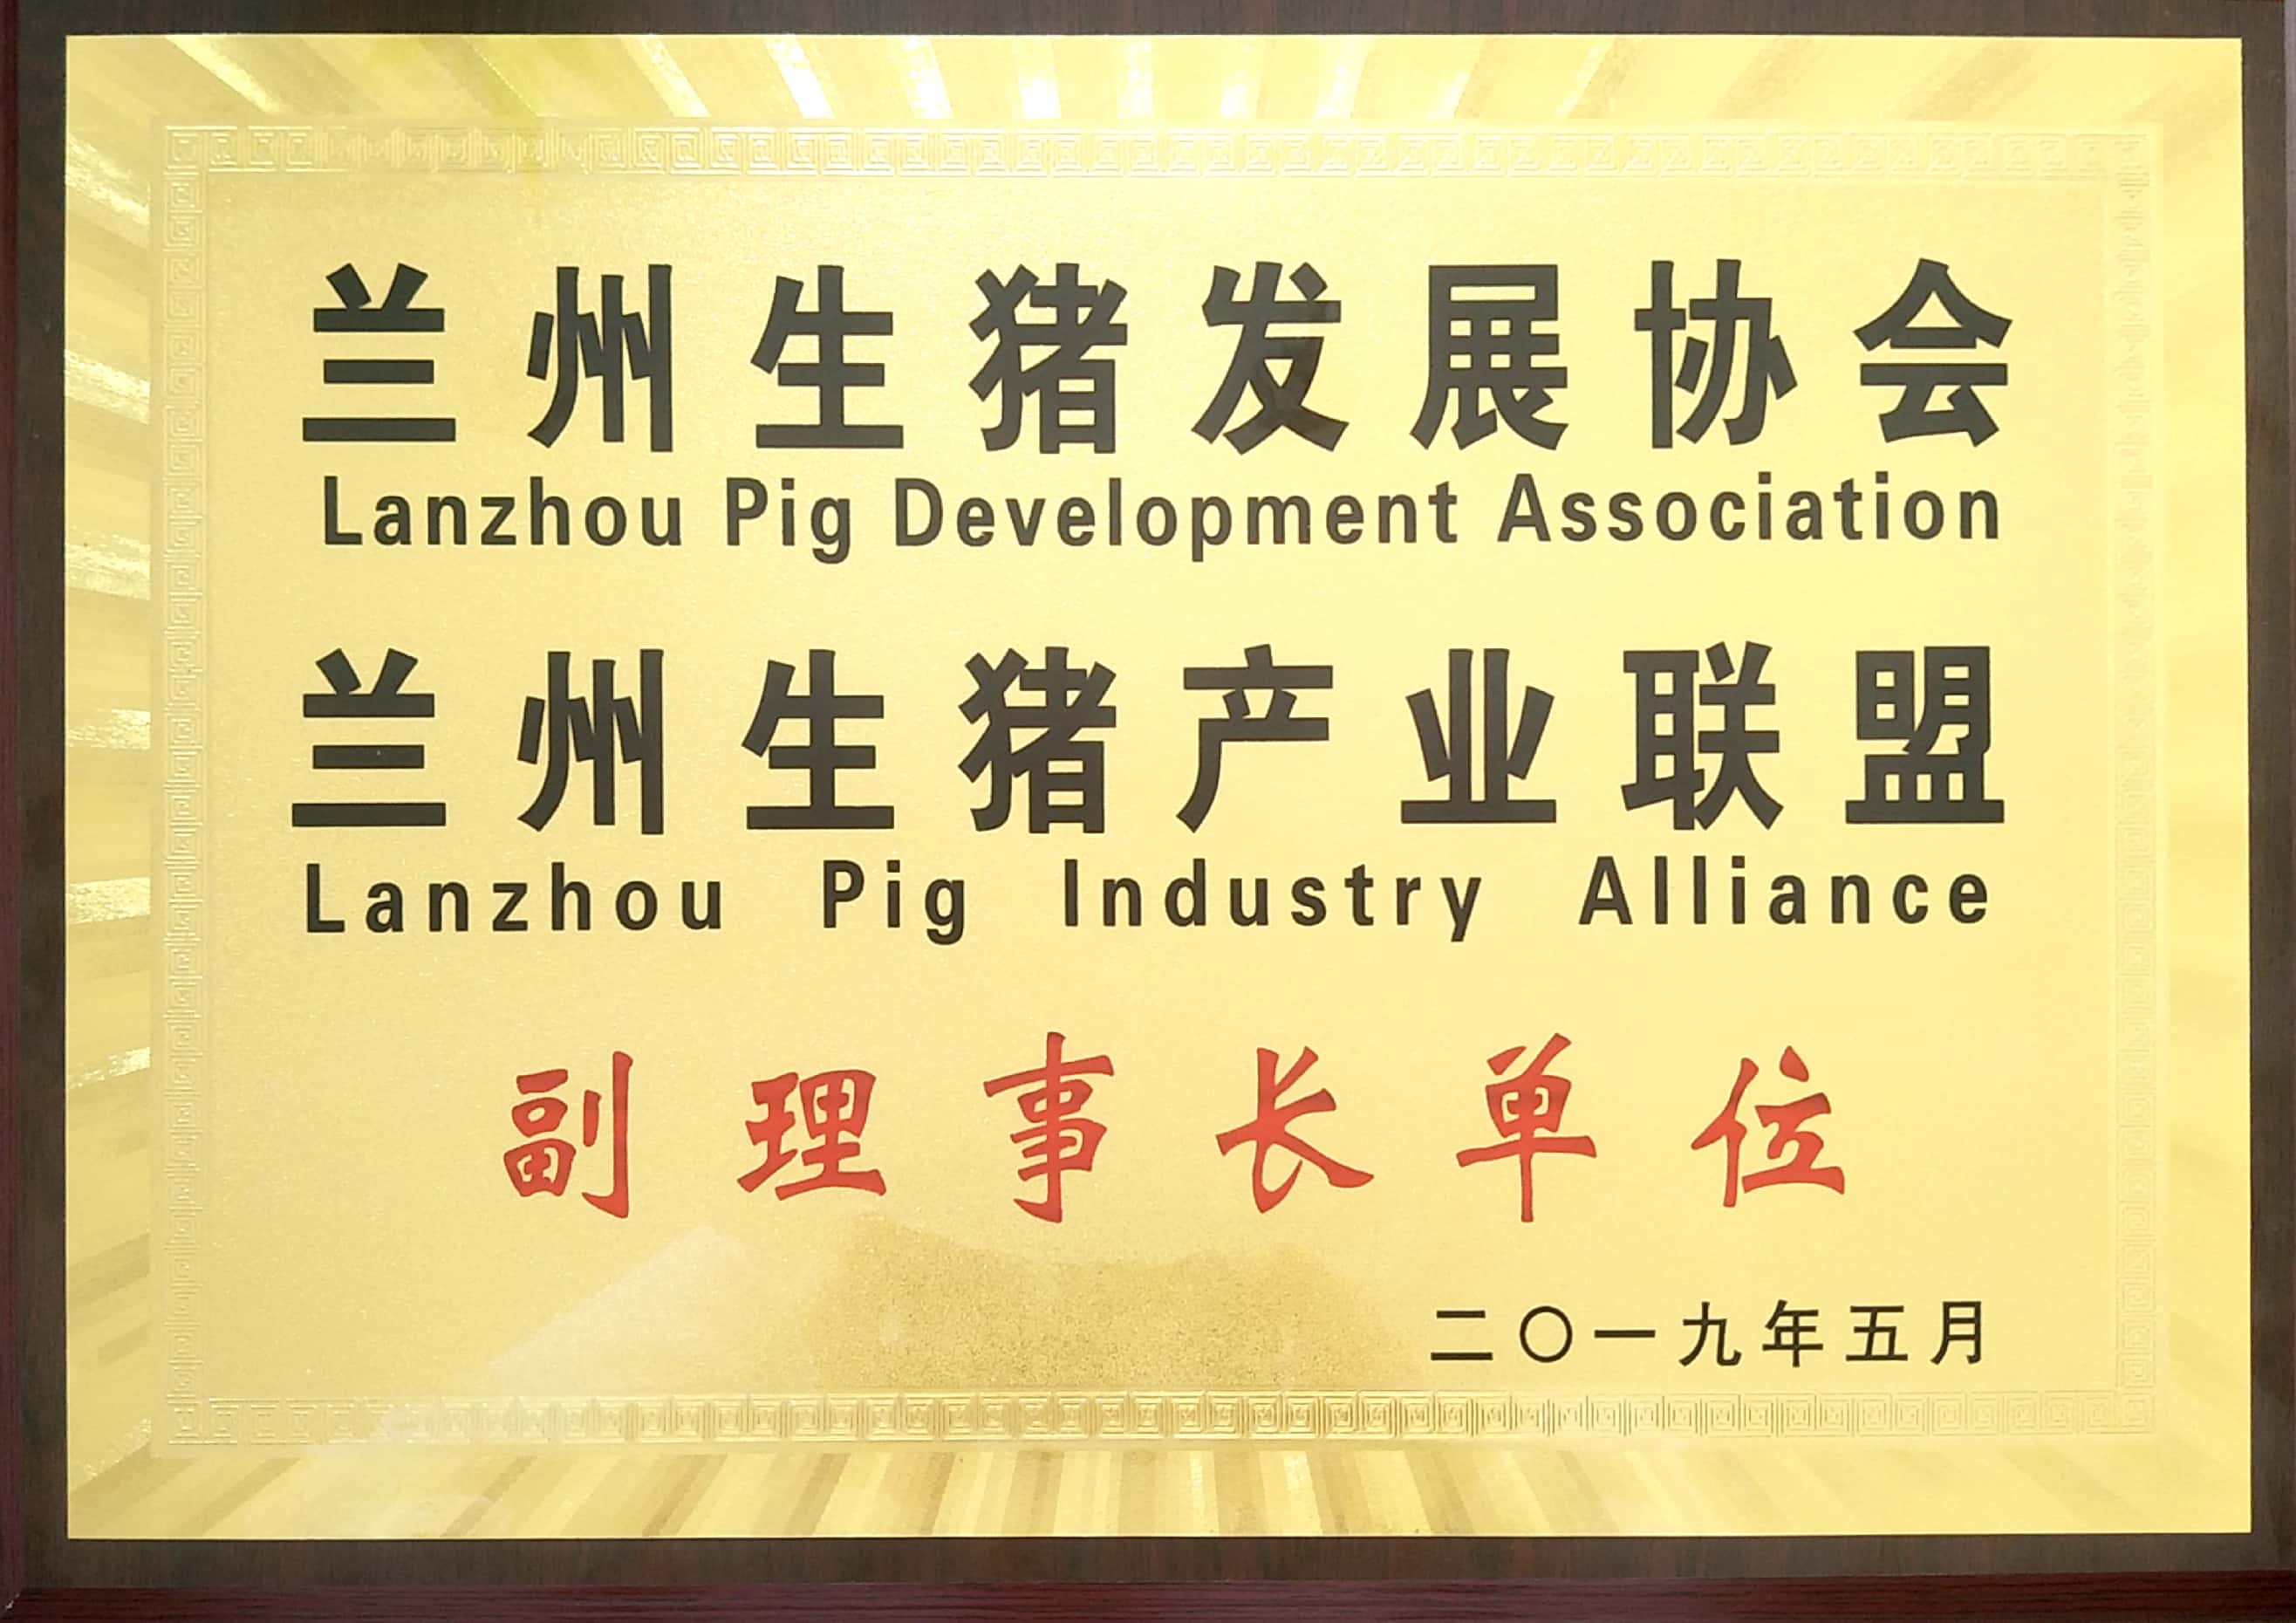 蘭州生豬發展協會、蘭州生豬產業聯盟副理事長單位